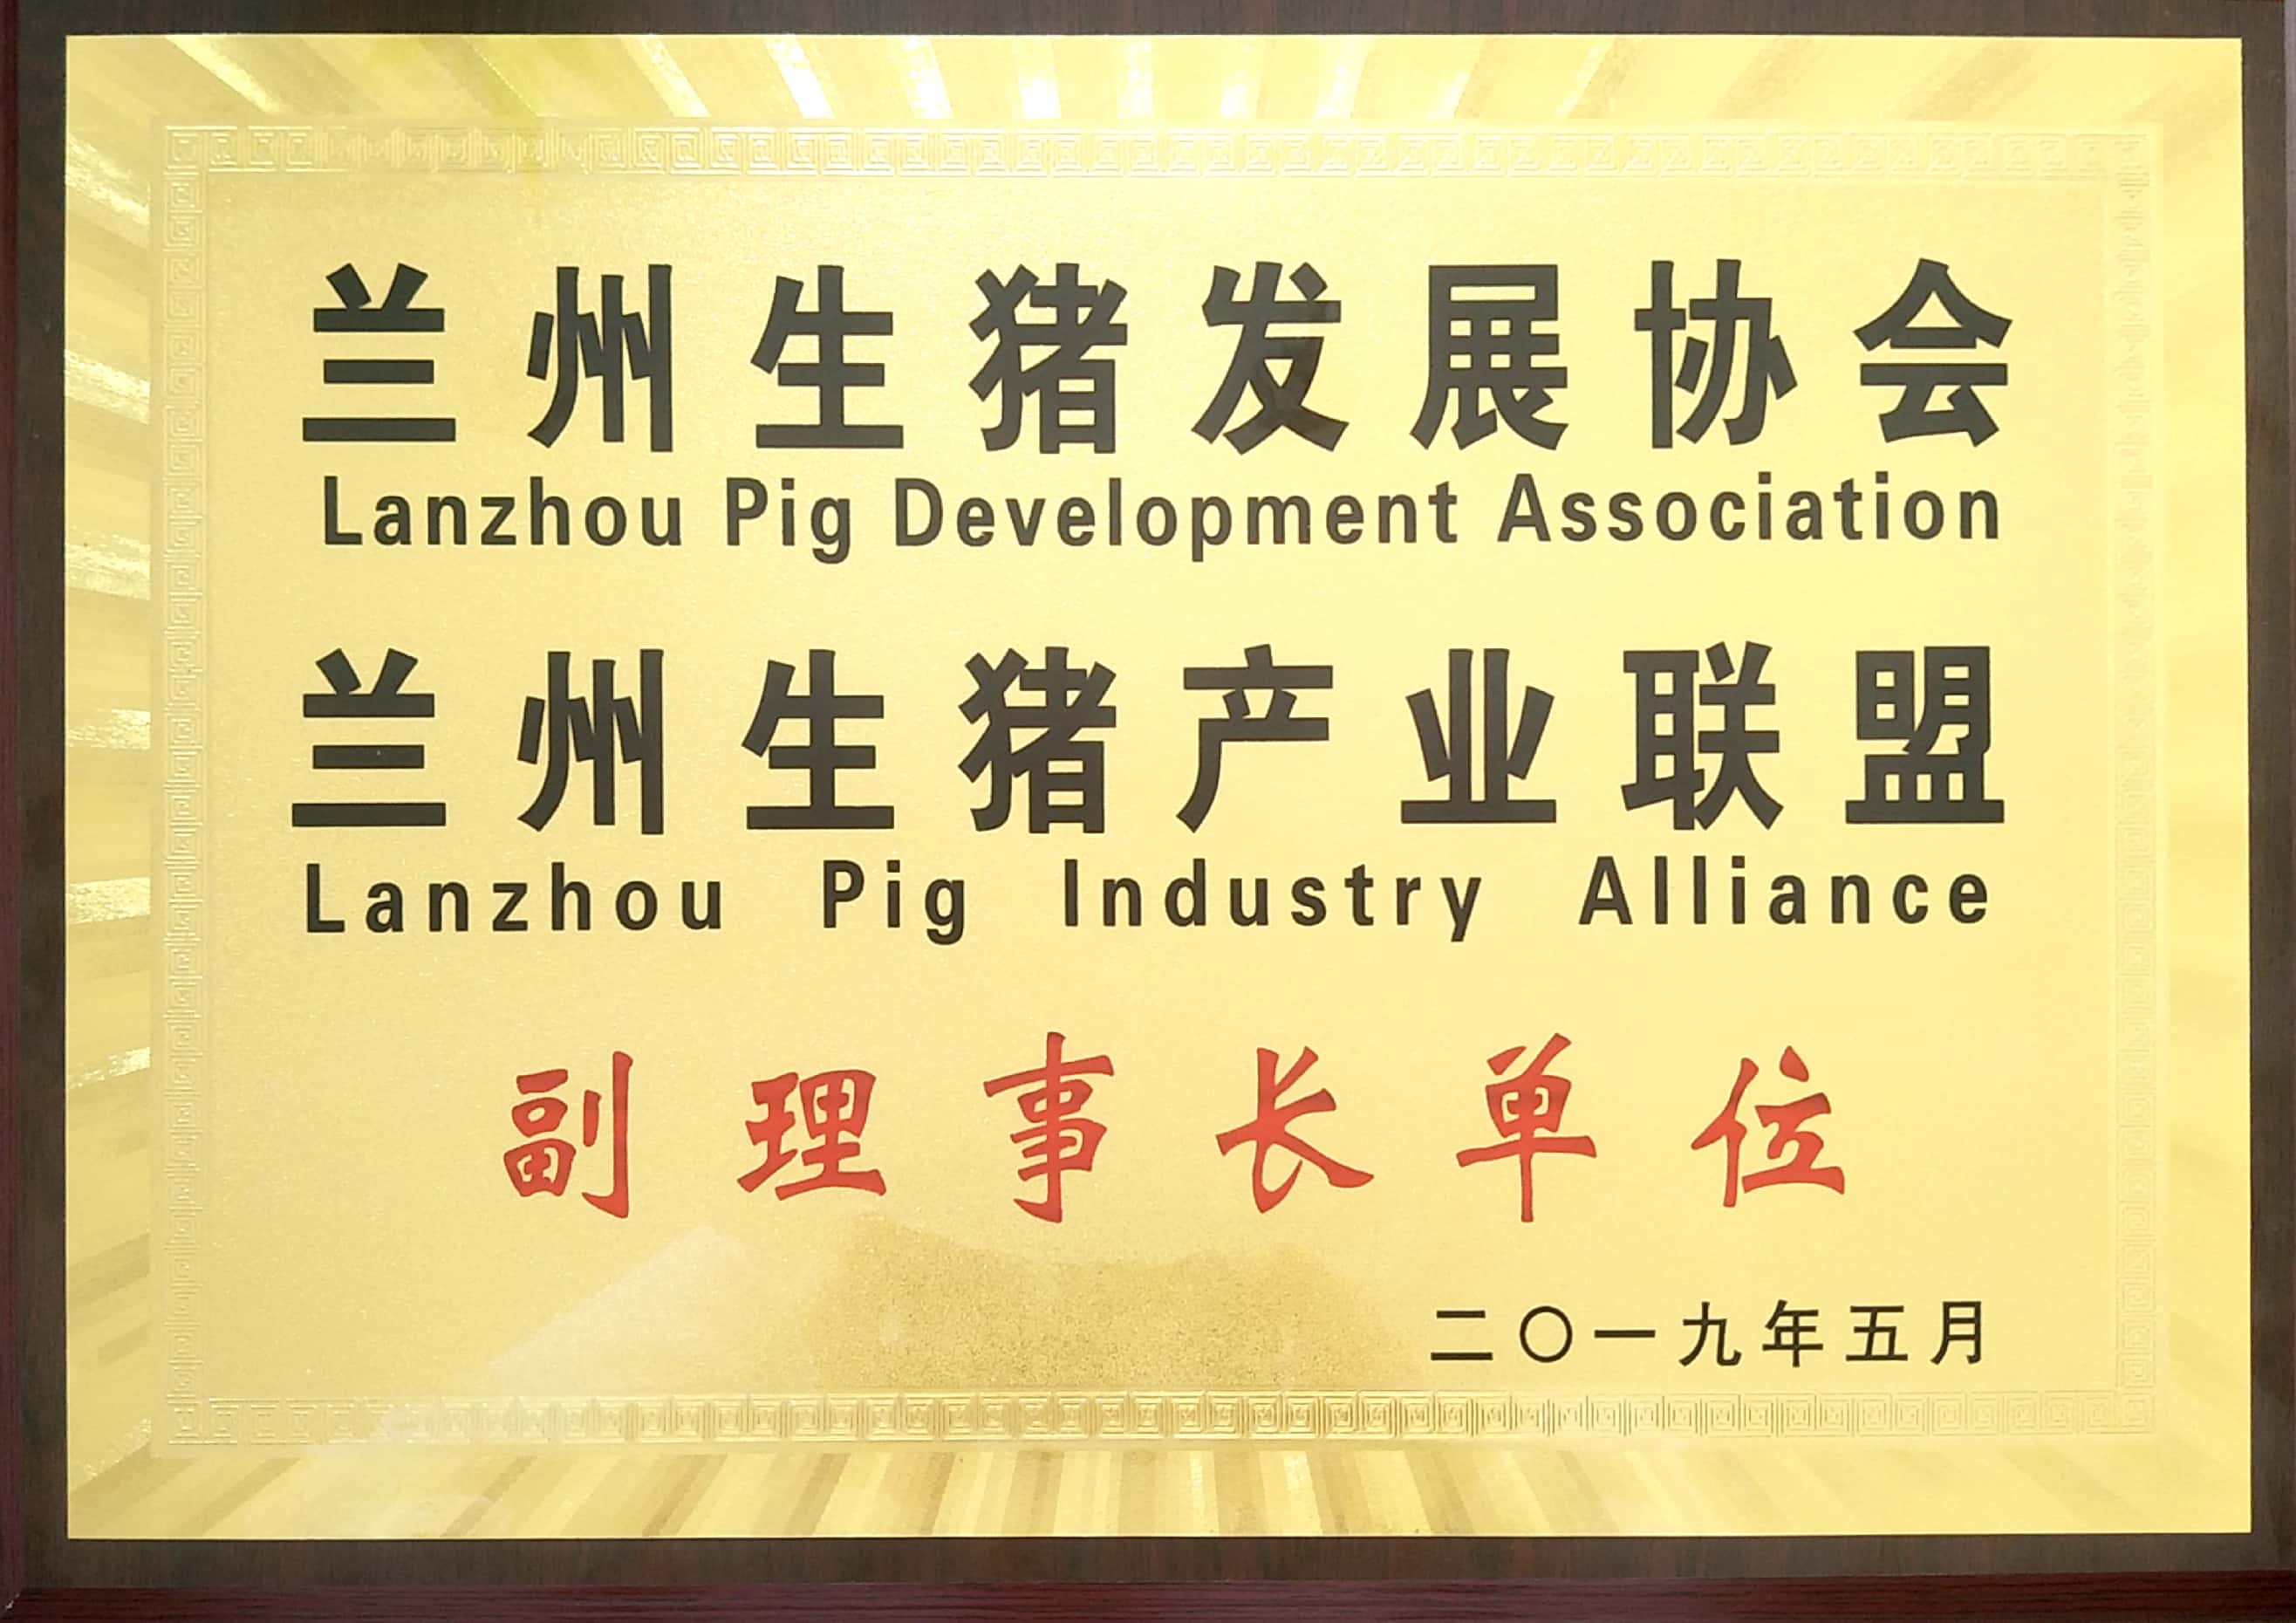 蘭州生豬發展協會、蘭州生豬產業聯盟副理事長單位